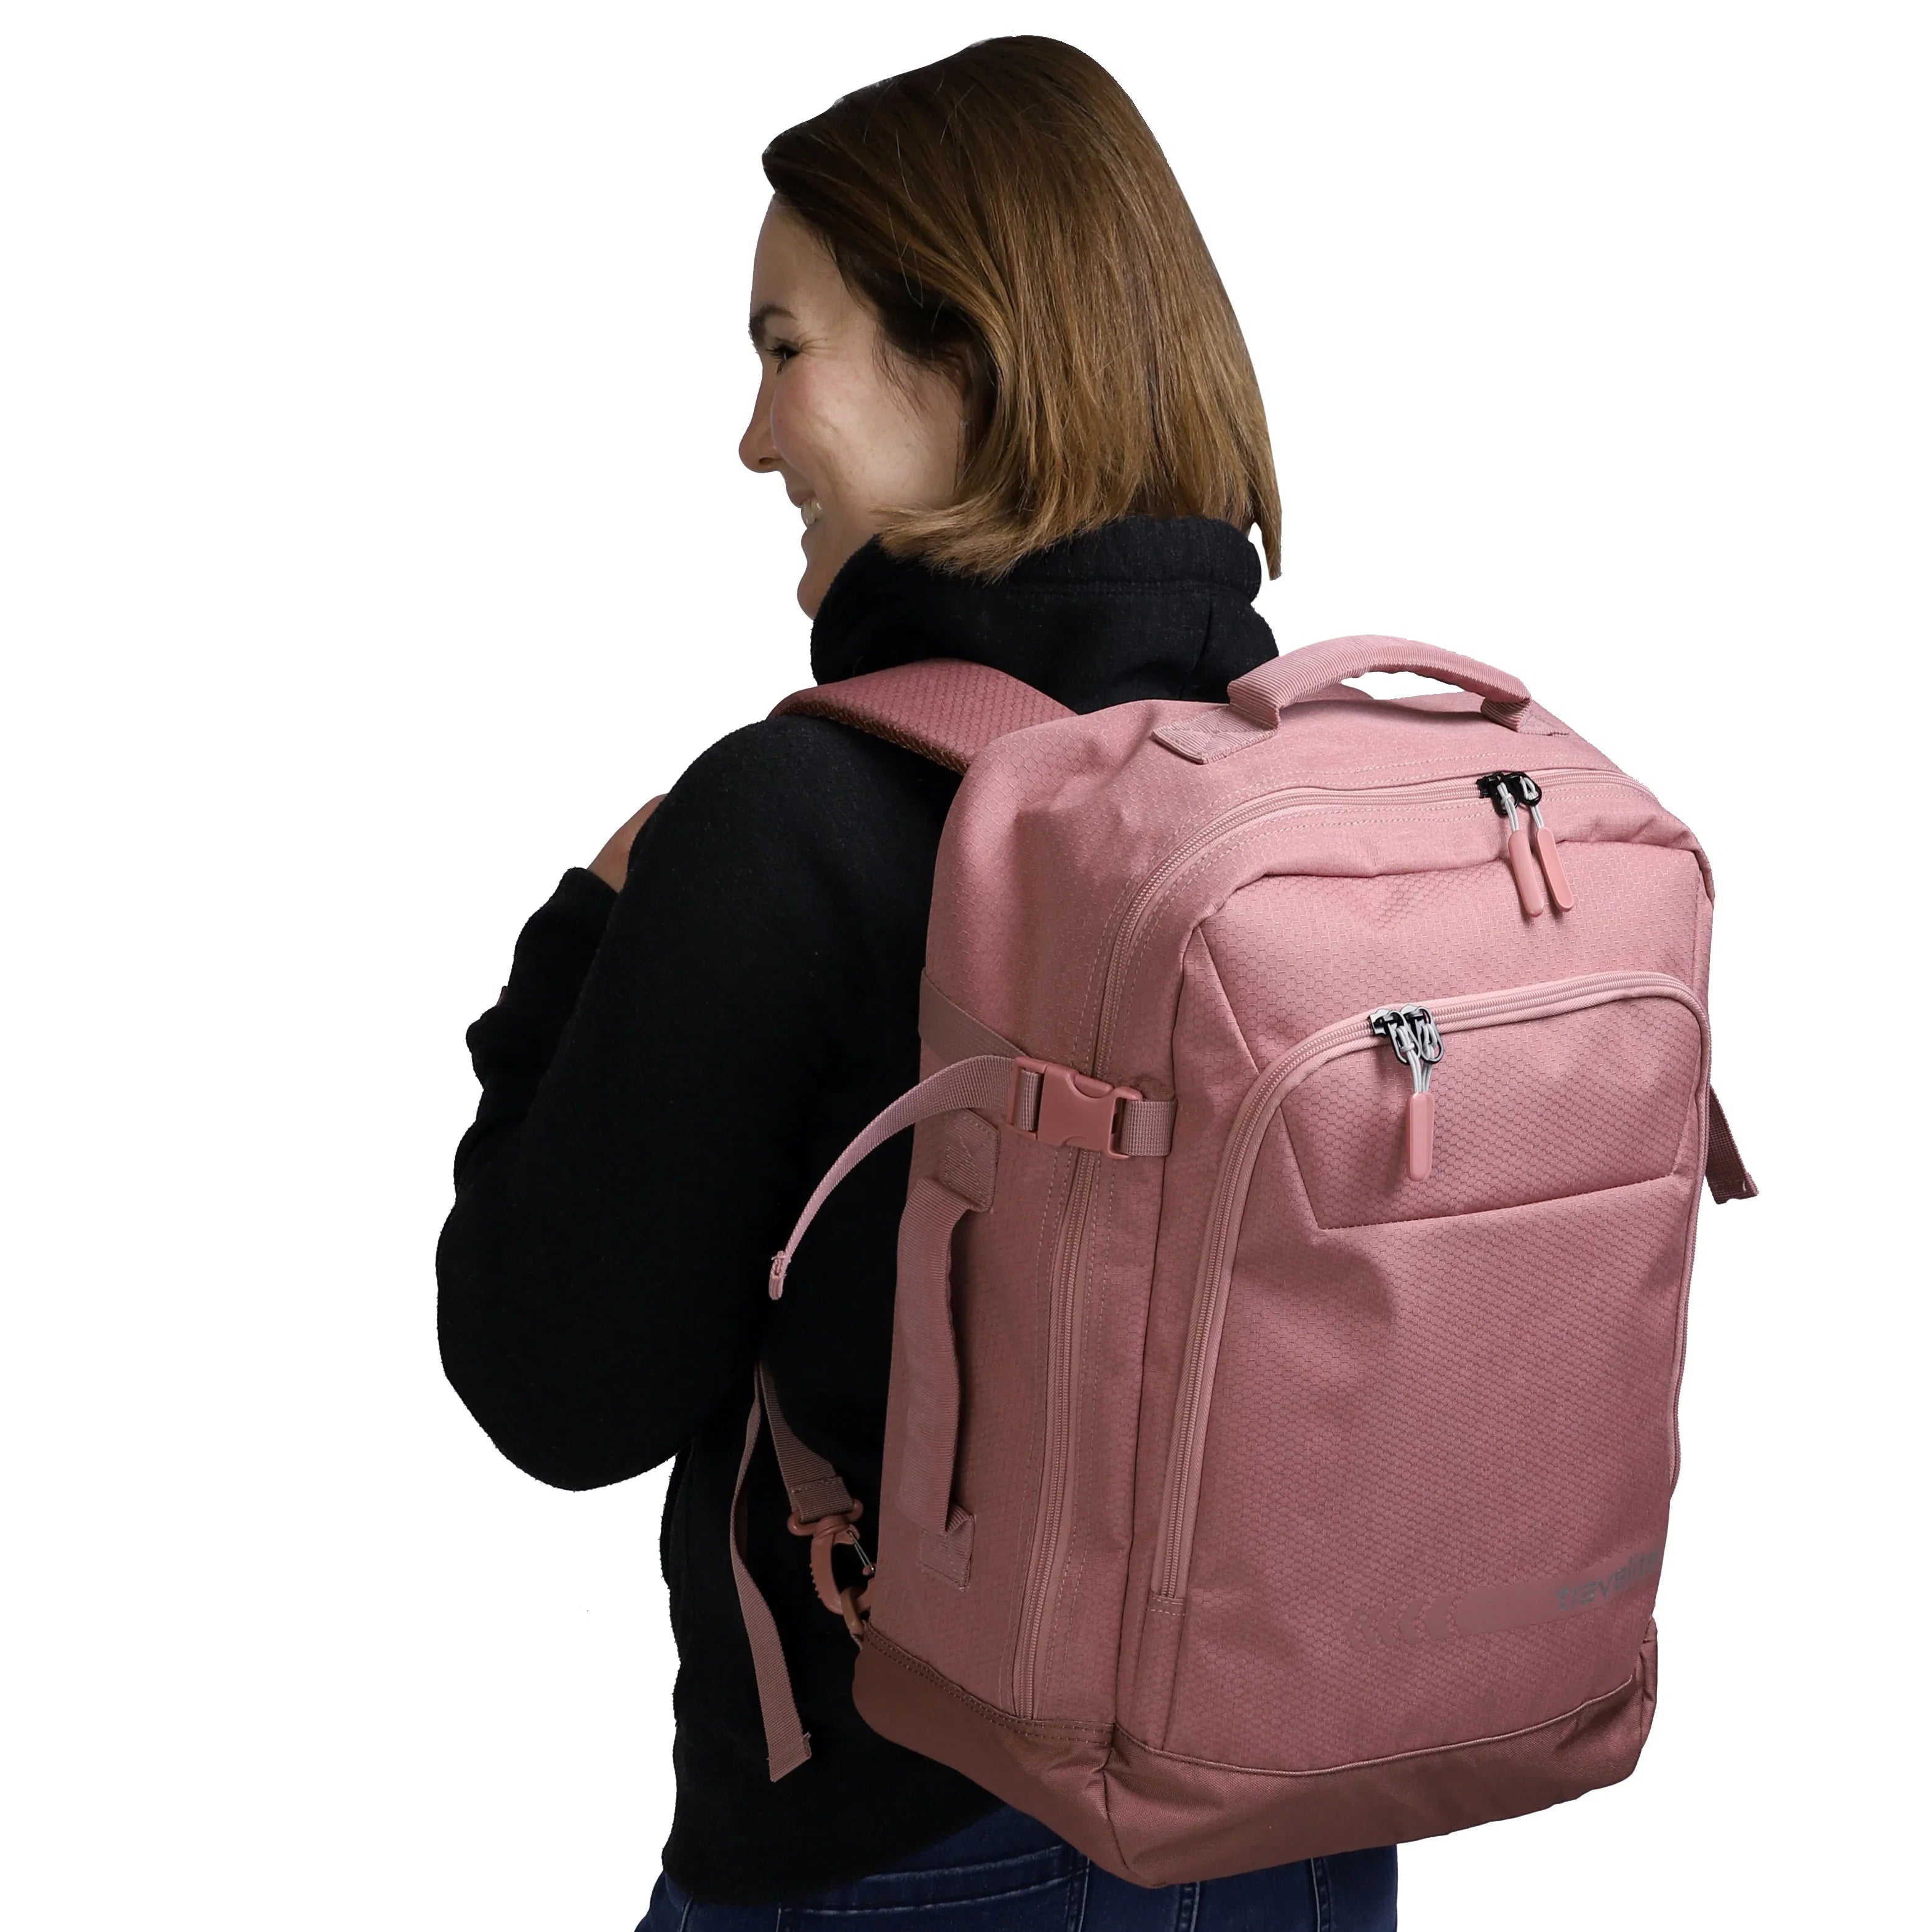 Travelite Kick Off Rucksack-Tasche 50 cm - Rosé